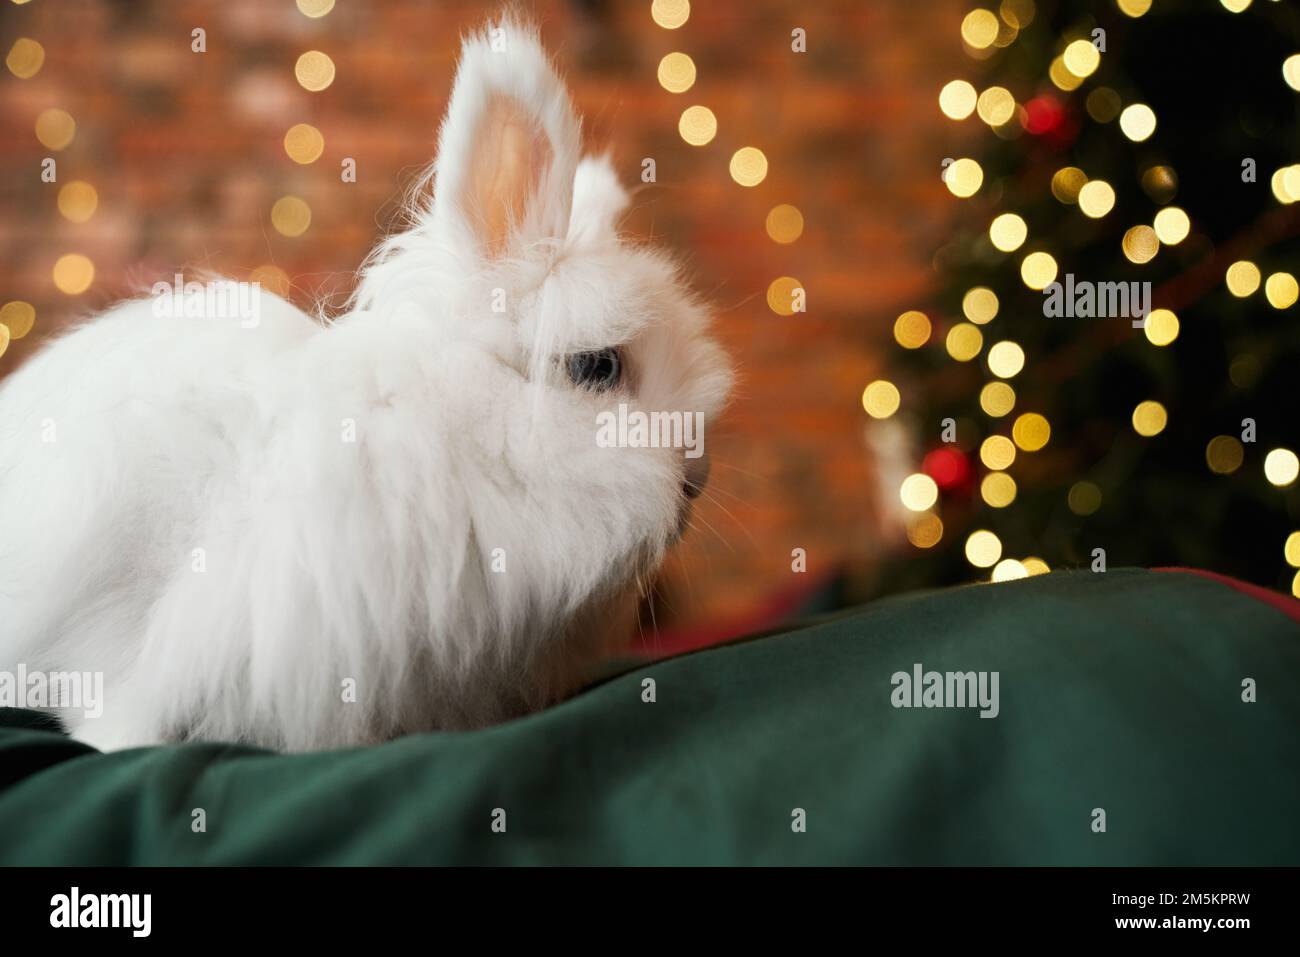 Vue latérale de l'animal, symbole de la nouvelle année posant, ayant photoshoot à l'intérieur. Blanc, lapin en fourrure assis, regardant l'arbre de noël décoré. Concept de nouvel an et de vacances. Banque D'Images